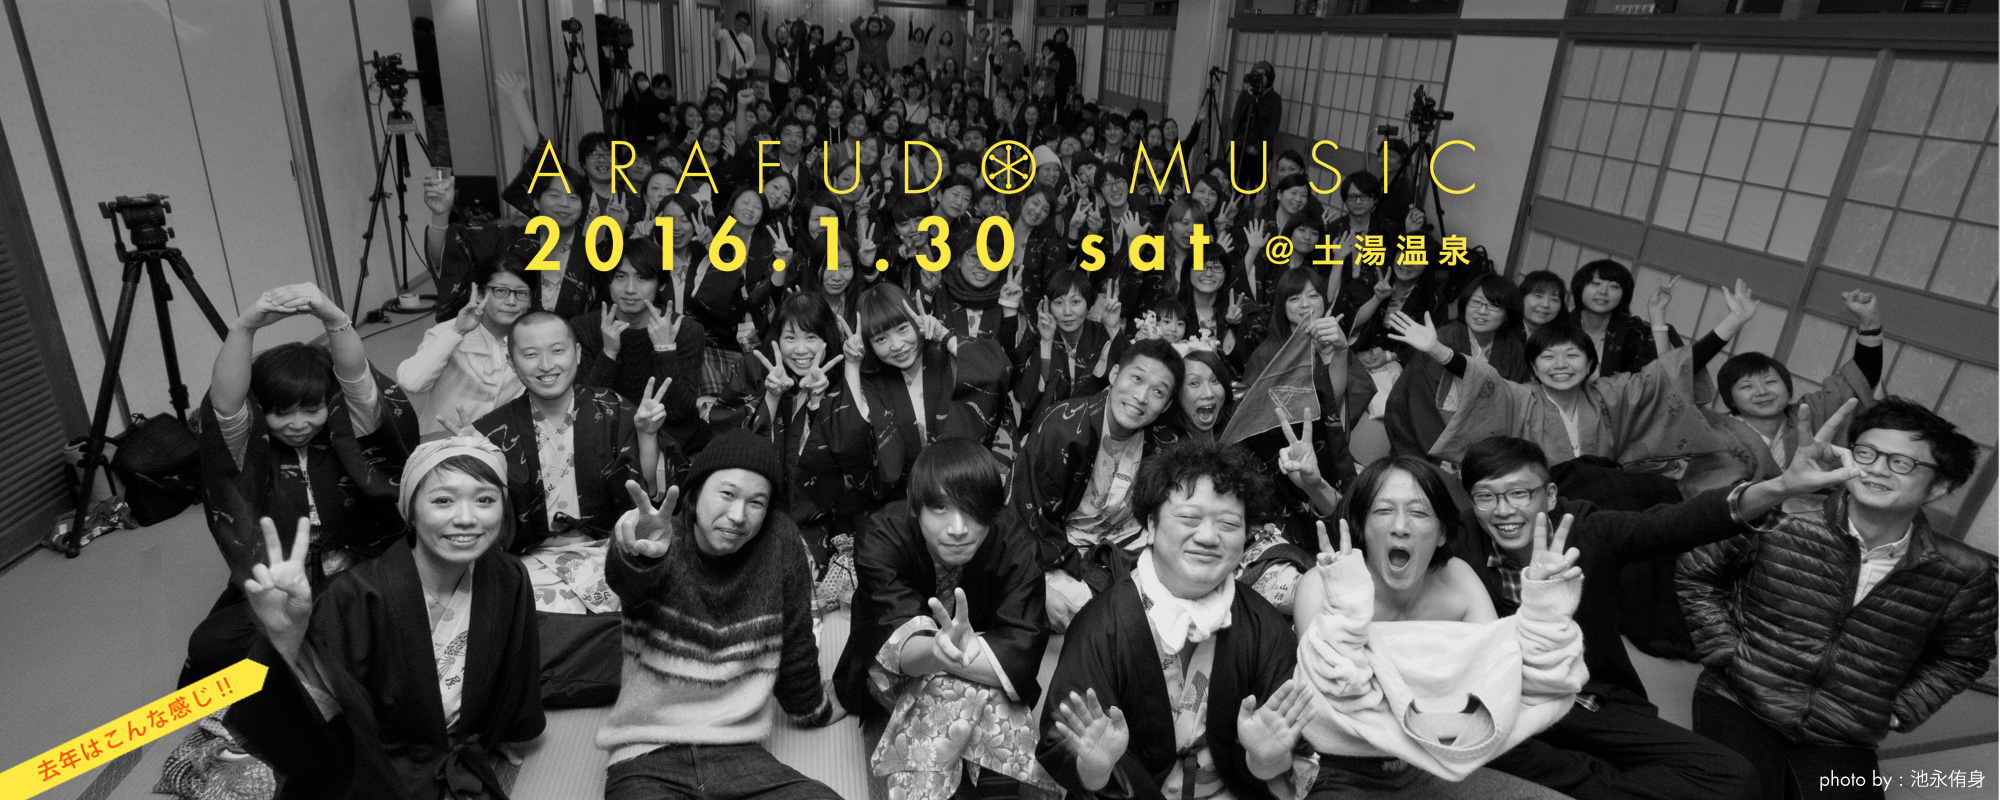 福島県　土湯温泉で行われる温泉フェス　Arafudo Music ’16